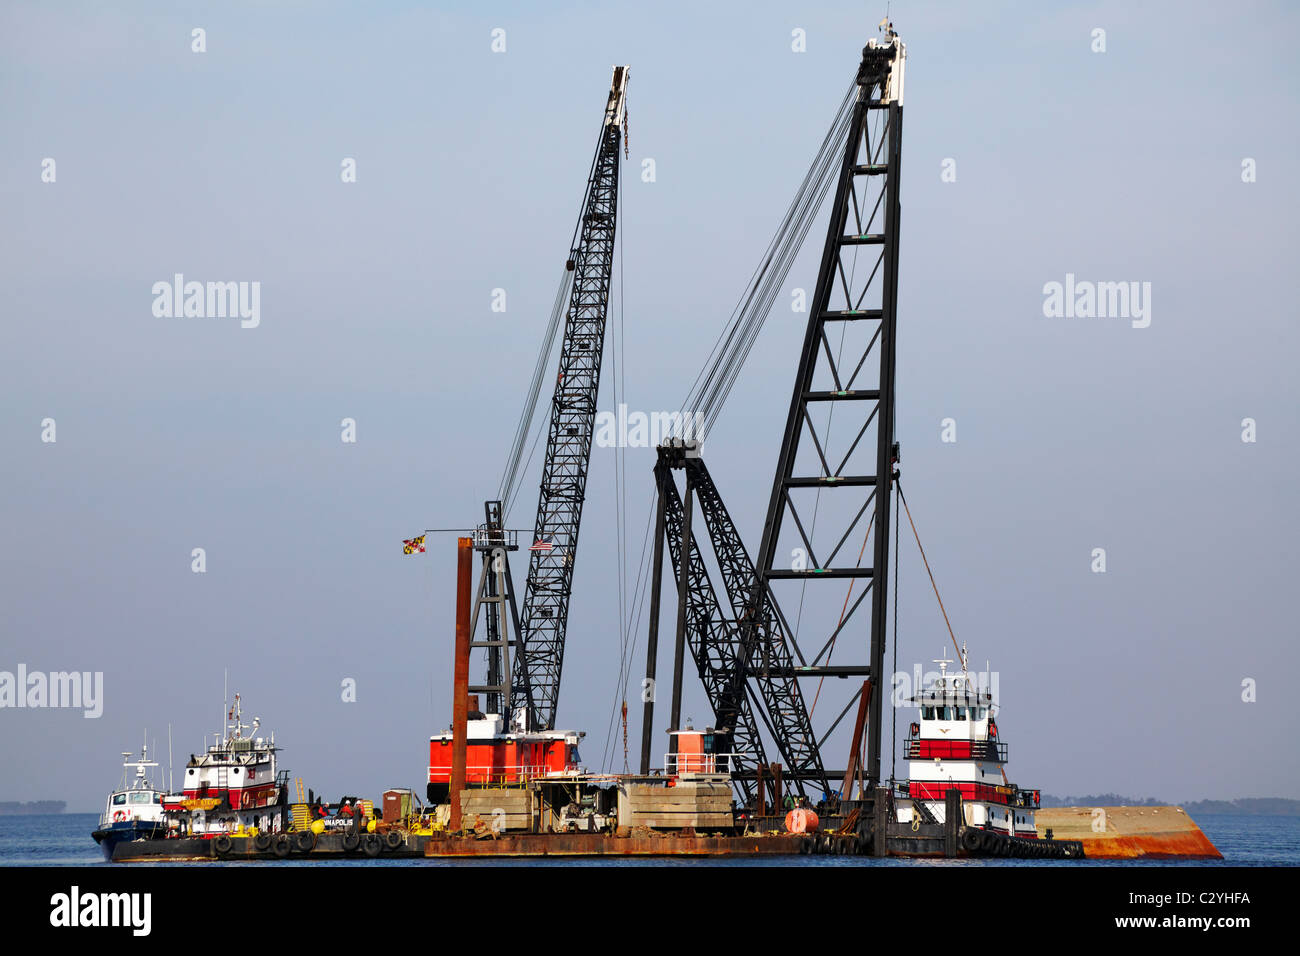 Les remorqueurs et les grues sur une plate-forme de projet de construction dans la baie de Chesapeake, dans le Maryland, Cove Point. Banque D'Images